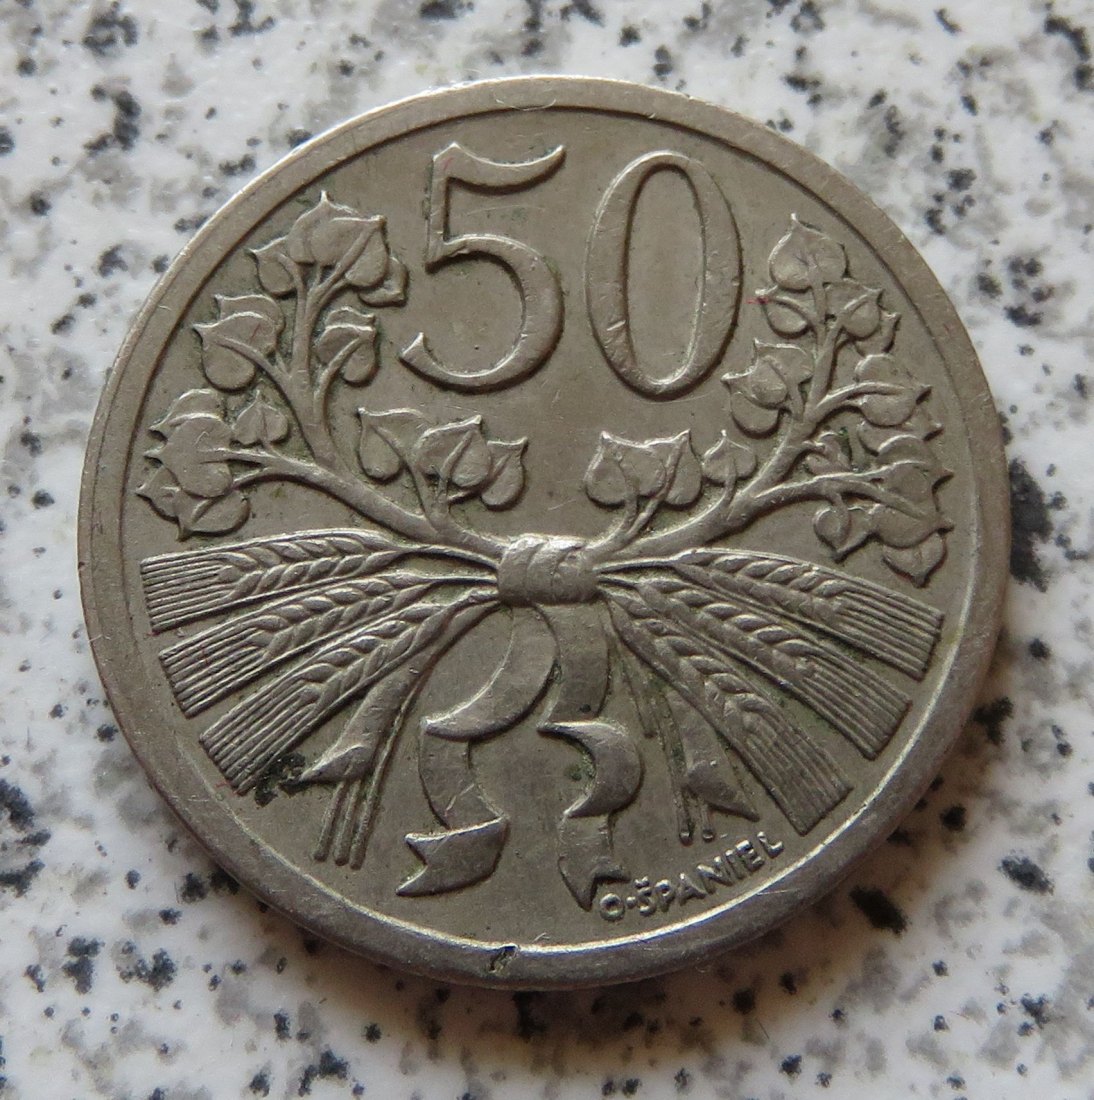  Tschechoslowakei 50 Heller 1924   